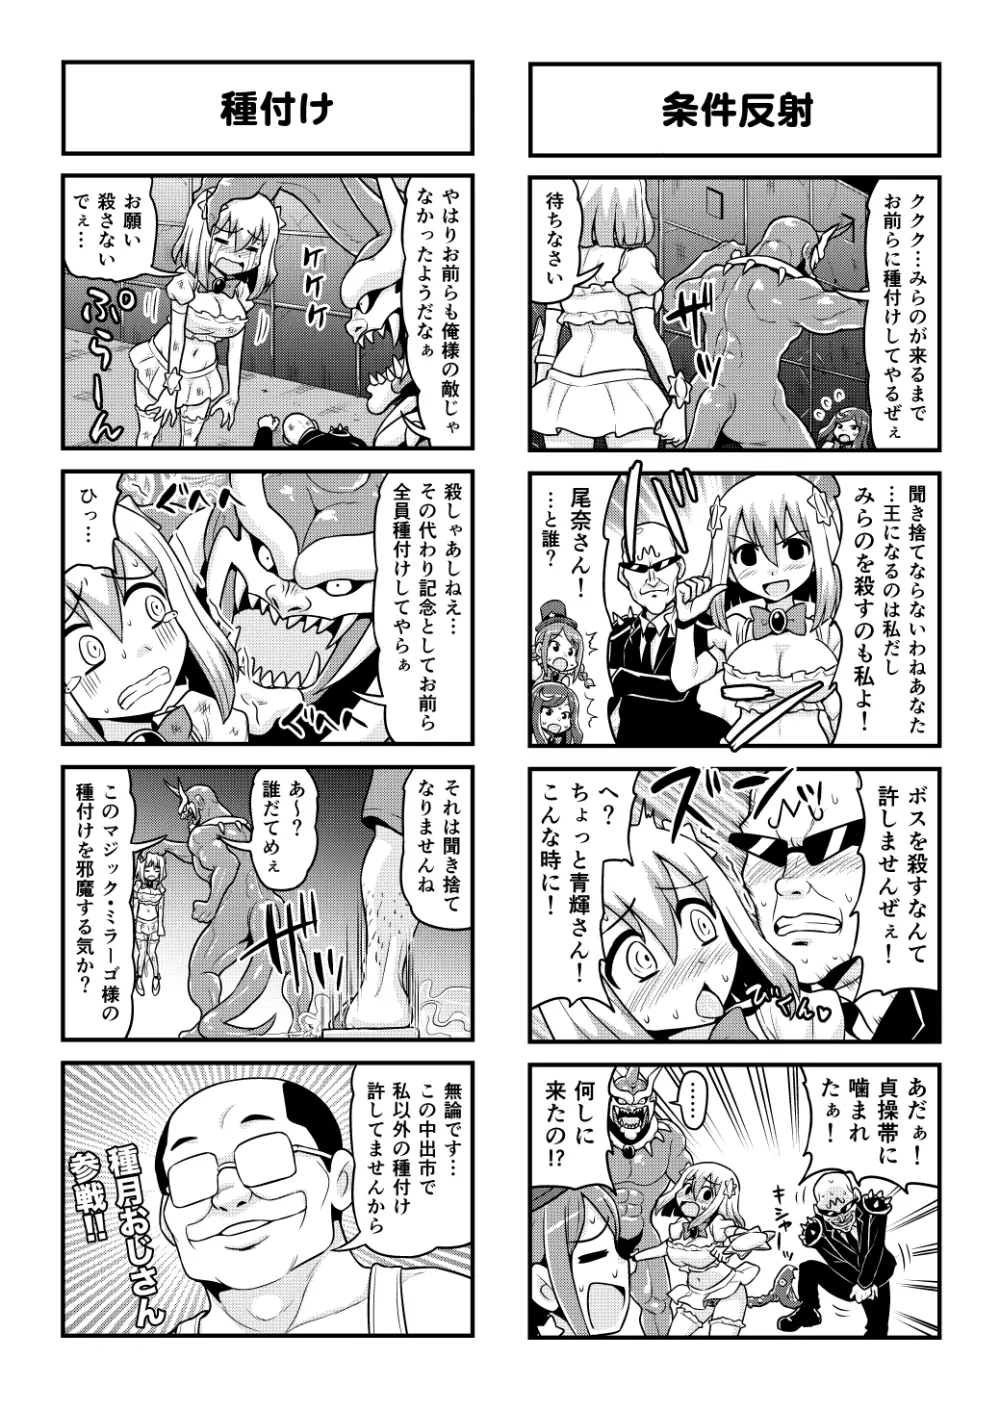 のんきBOY 1-48 - page414